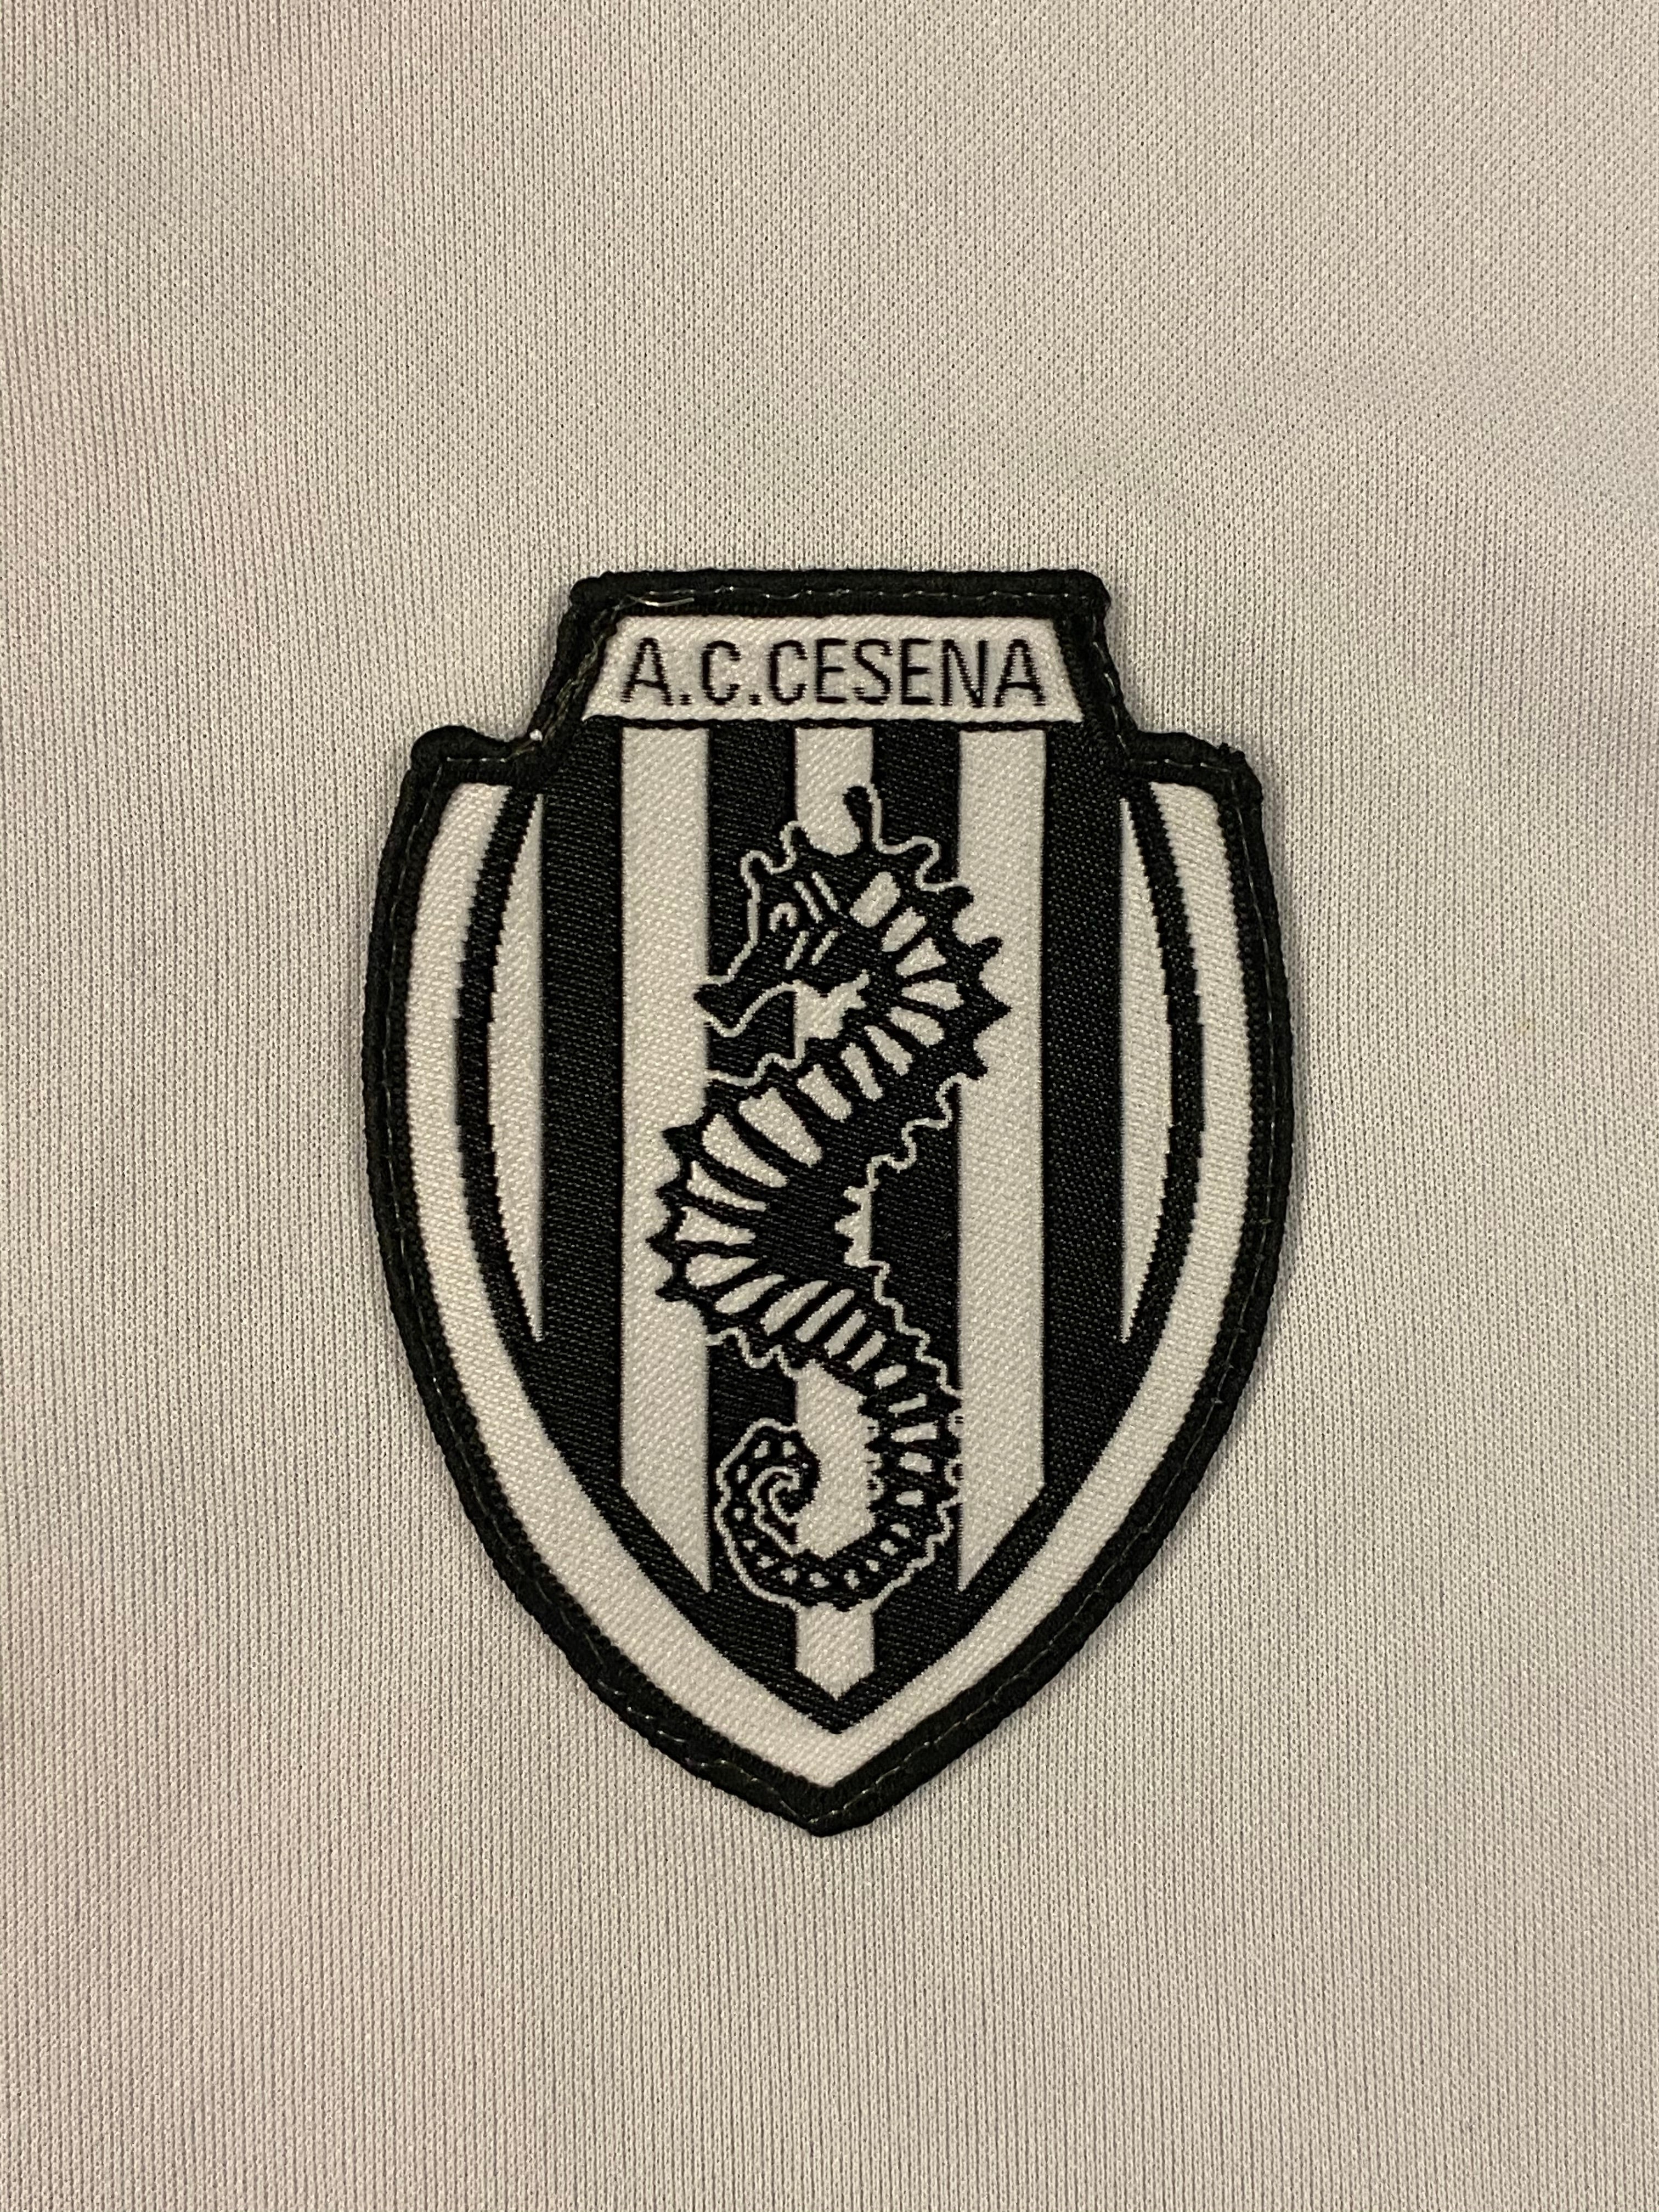 Camiseta de entrenamiento Cesena 2013/14 (L) 9/10